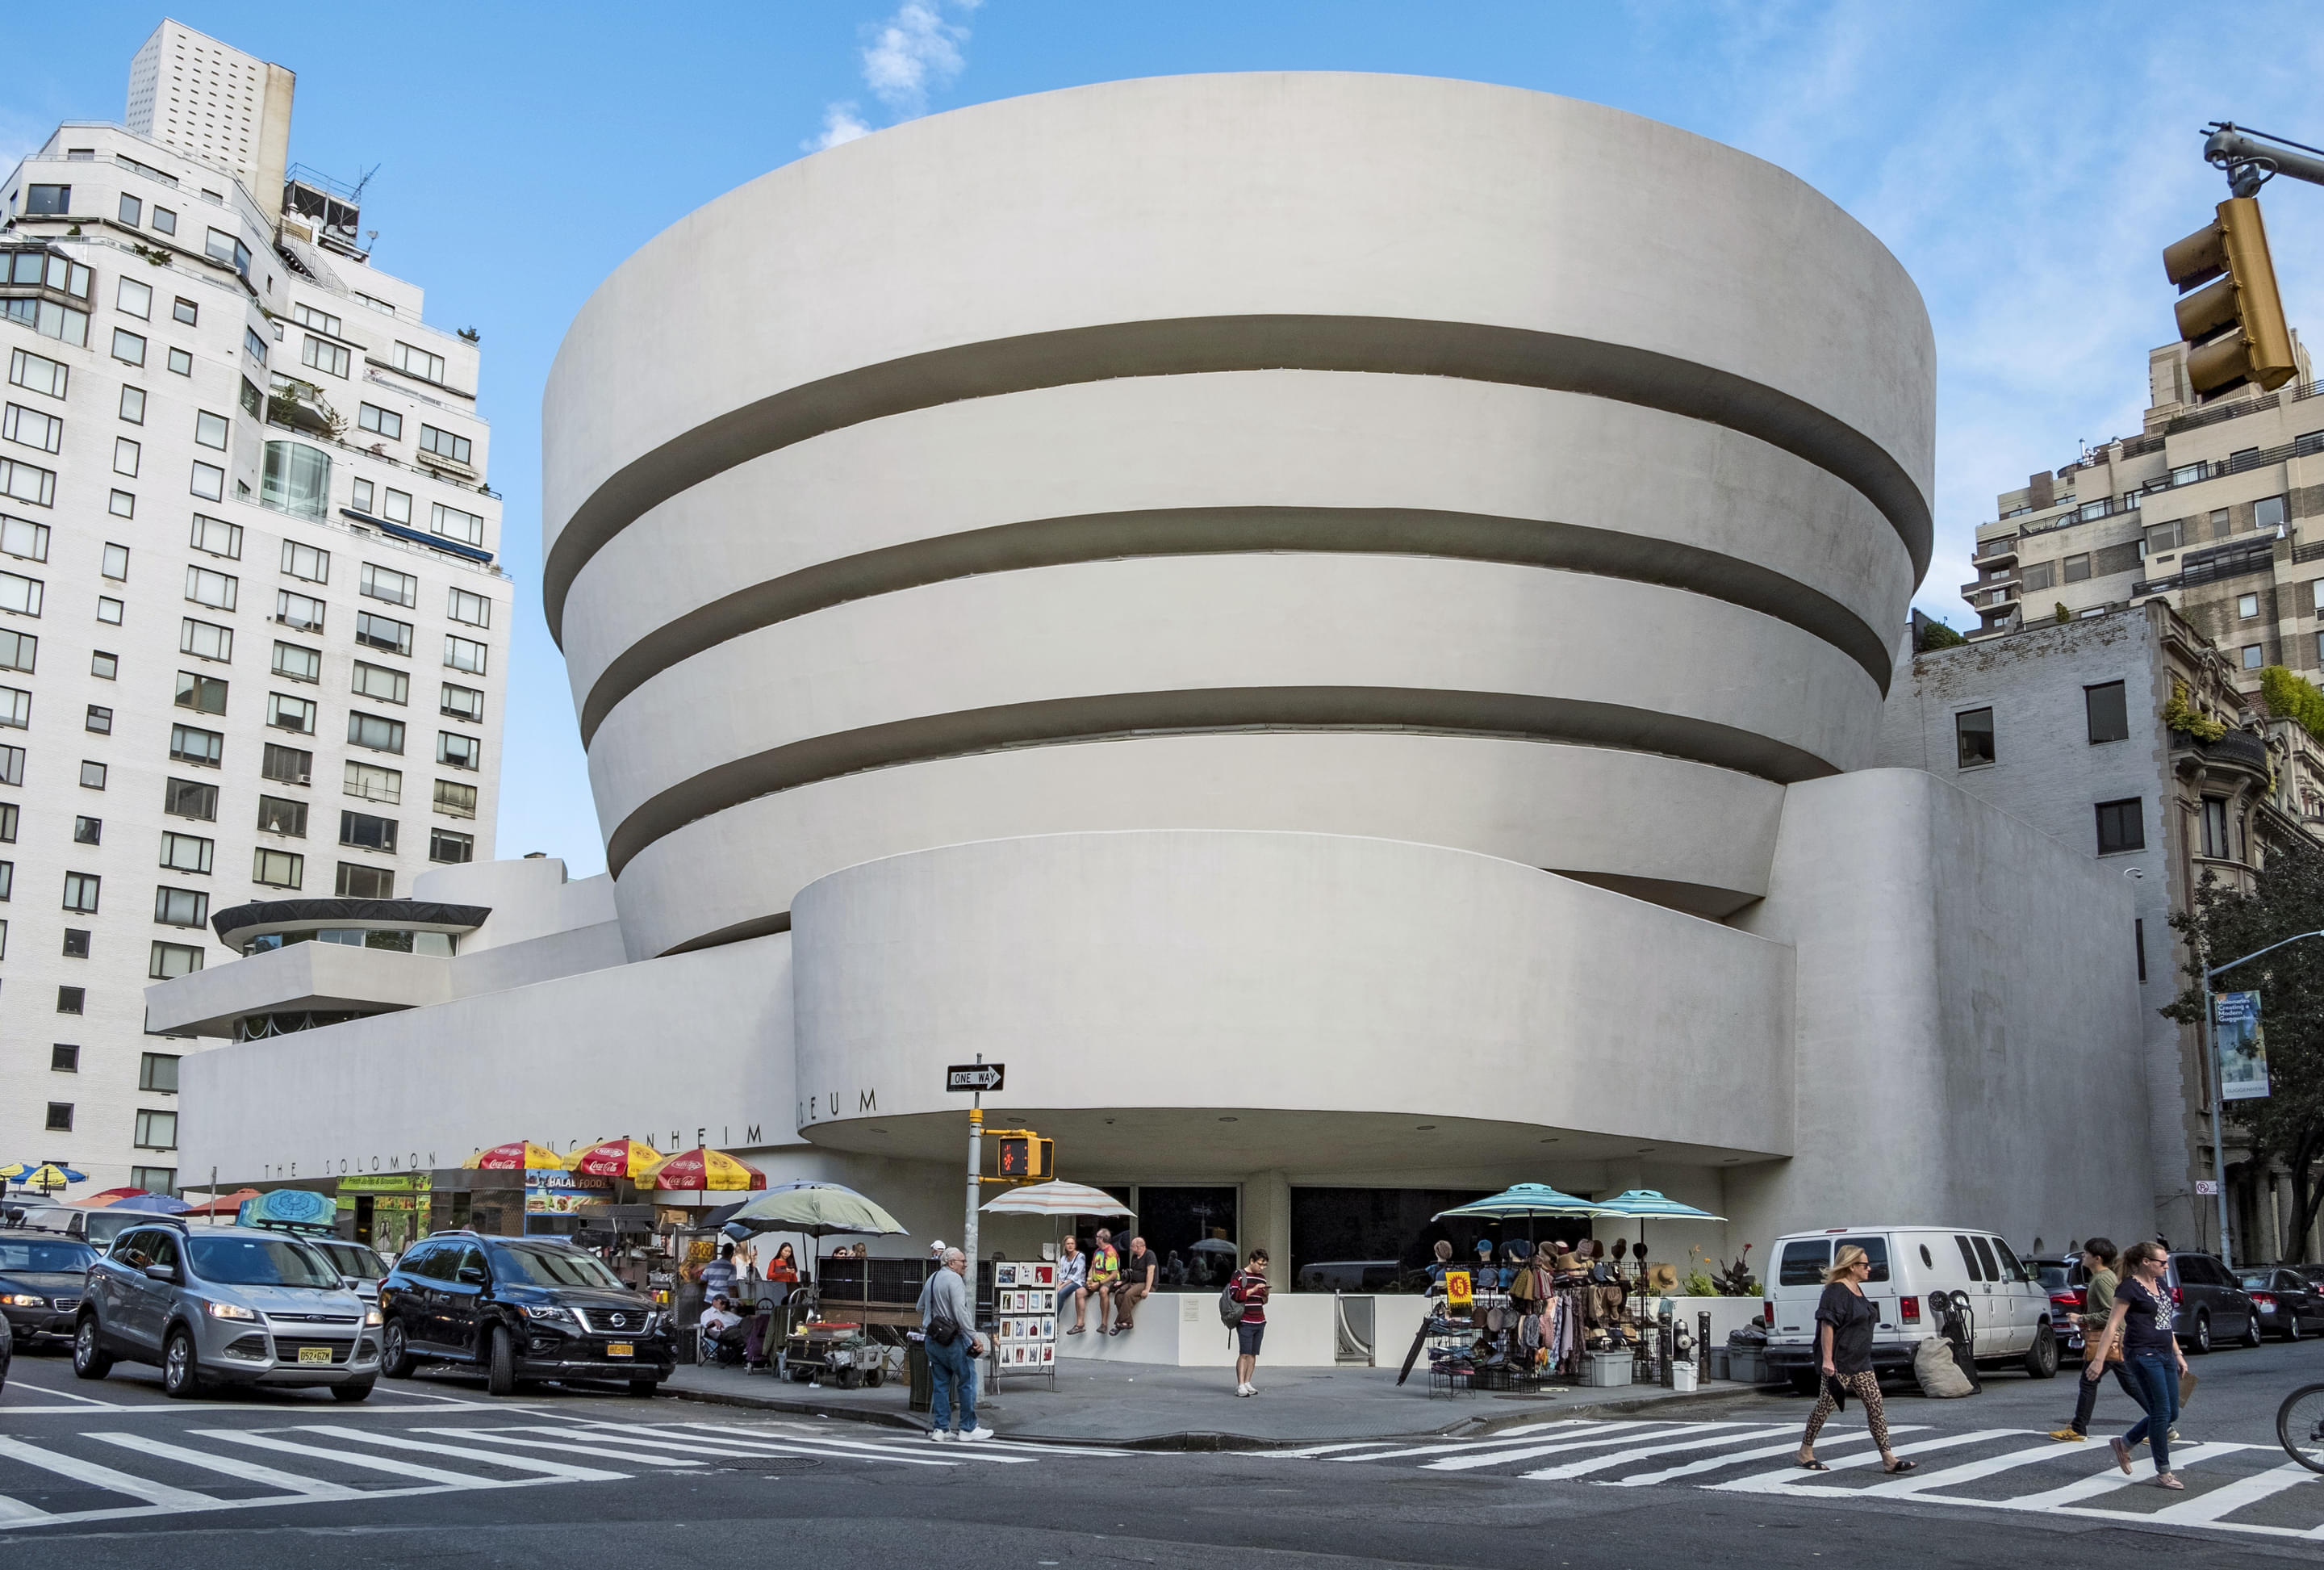 Solomon R. Guggenheim Museum Overview